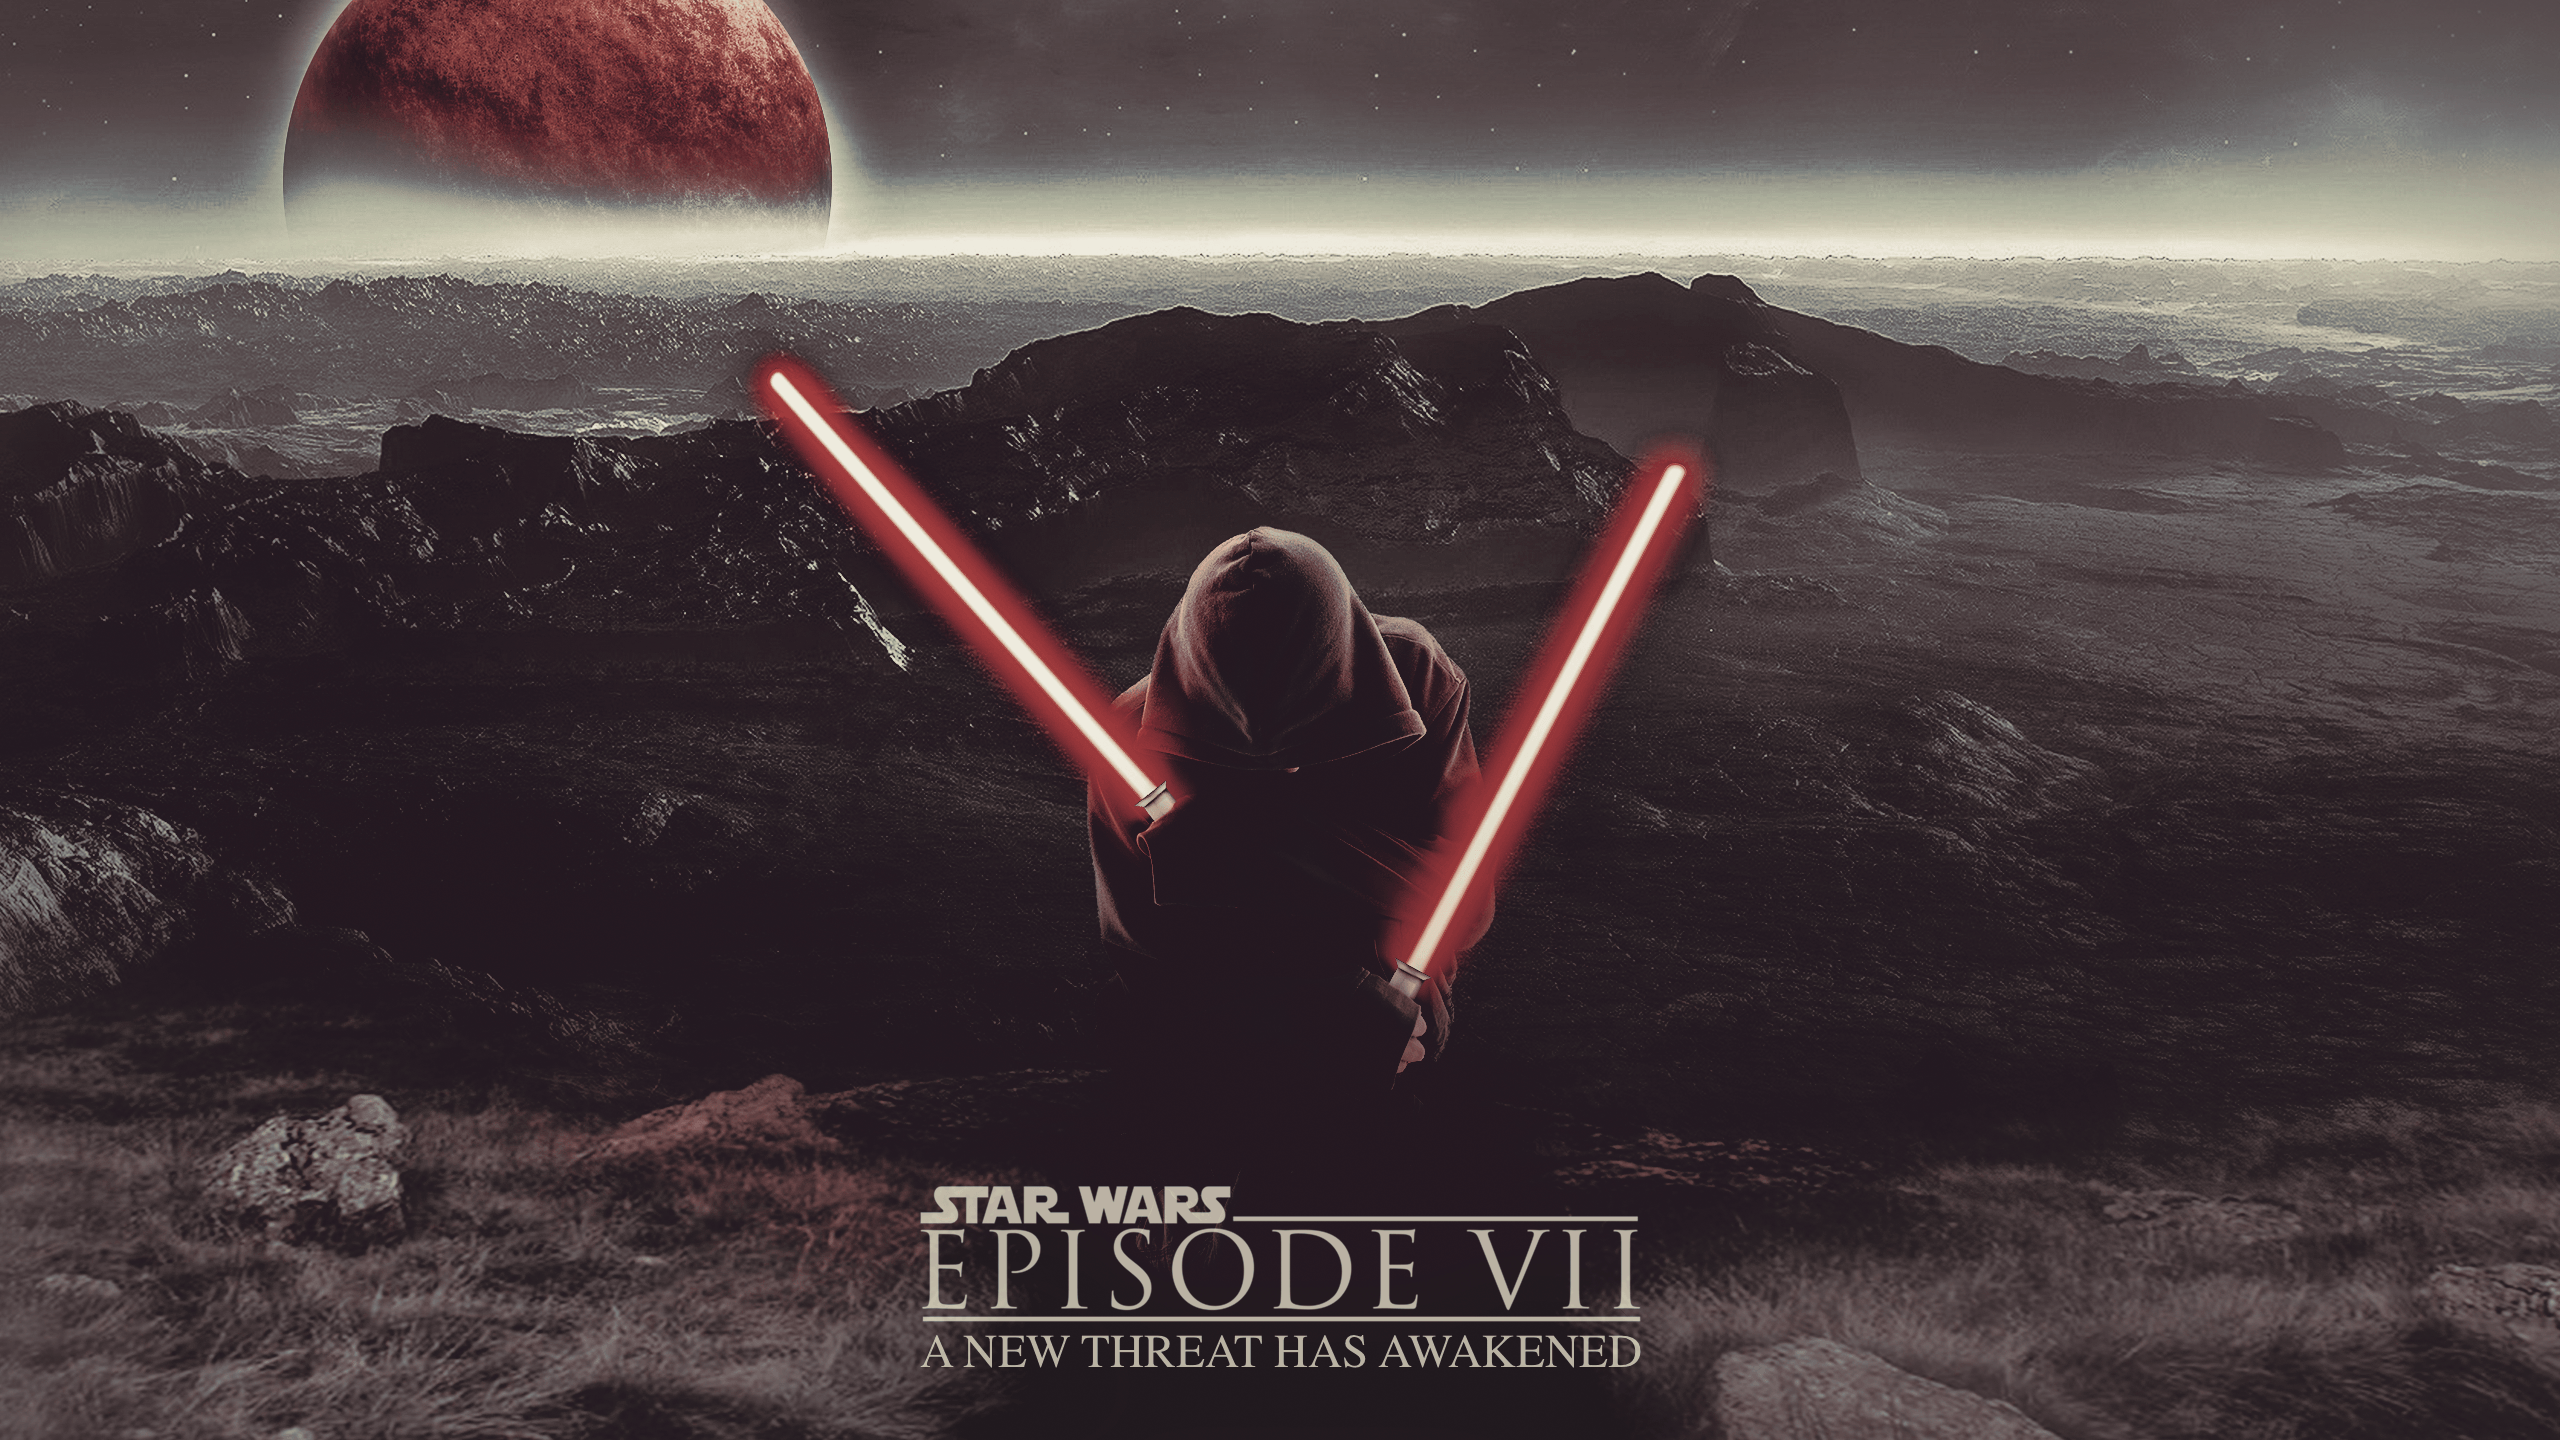 Star Wars Episode VII Wallpaper 3 X 1440